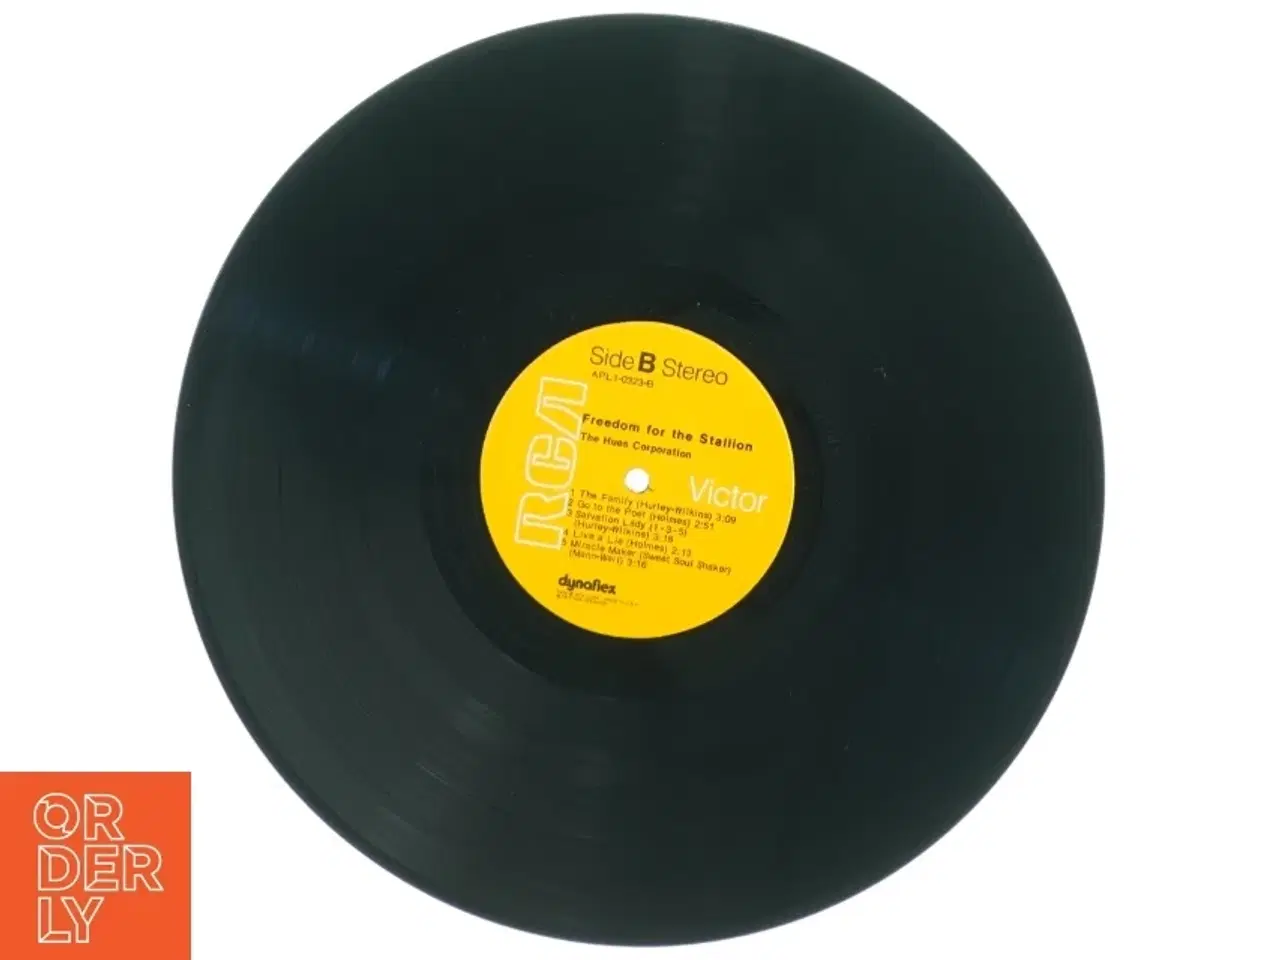 Billede 3 - The Hues Corporation - Freedom For The Stallion Vinyl LP fra RCA (str. 31 x 31 cm)